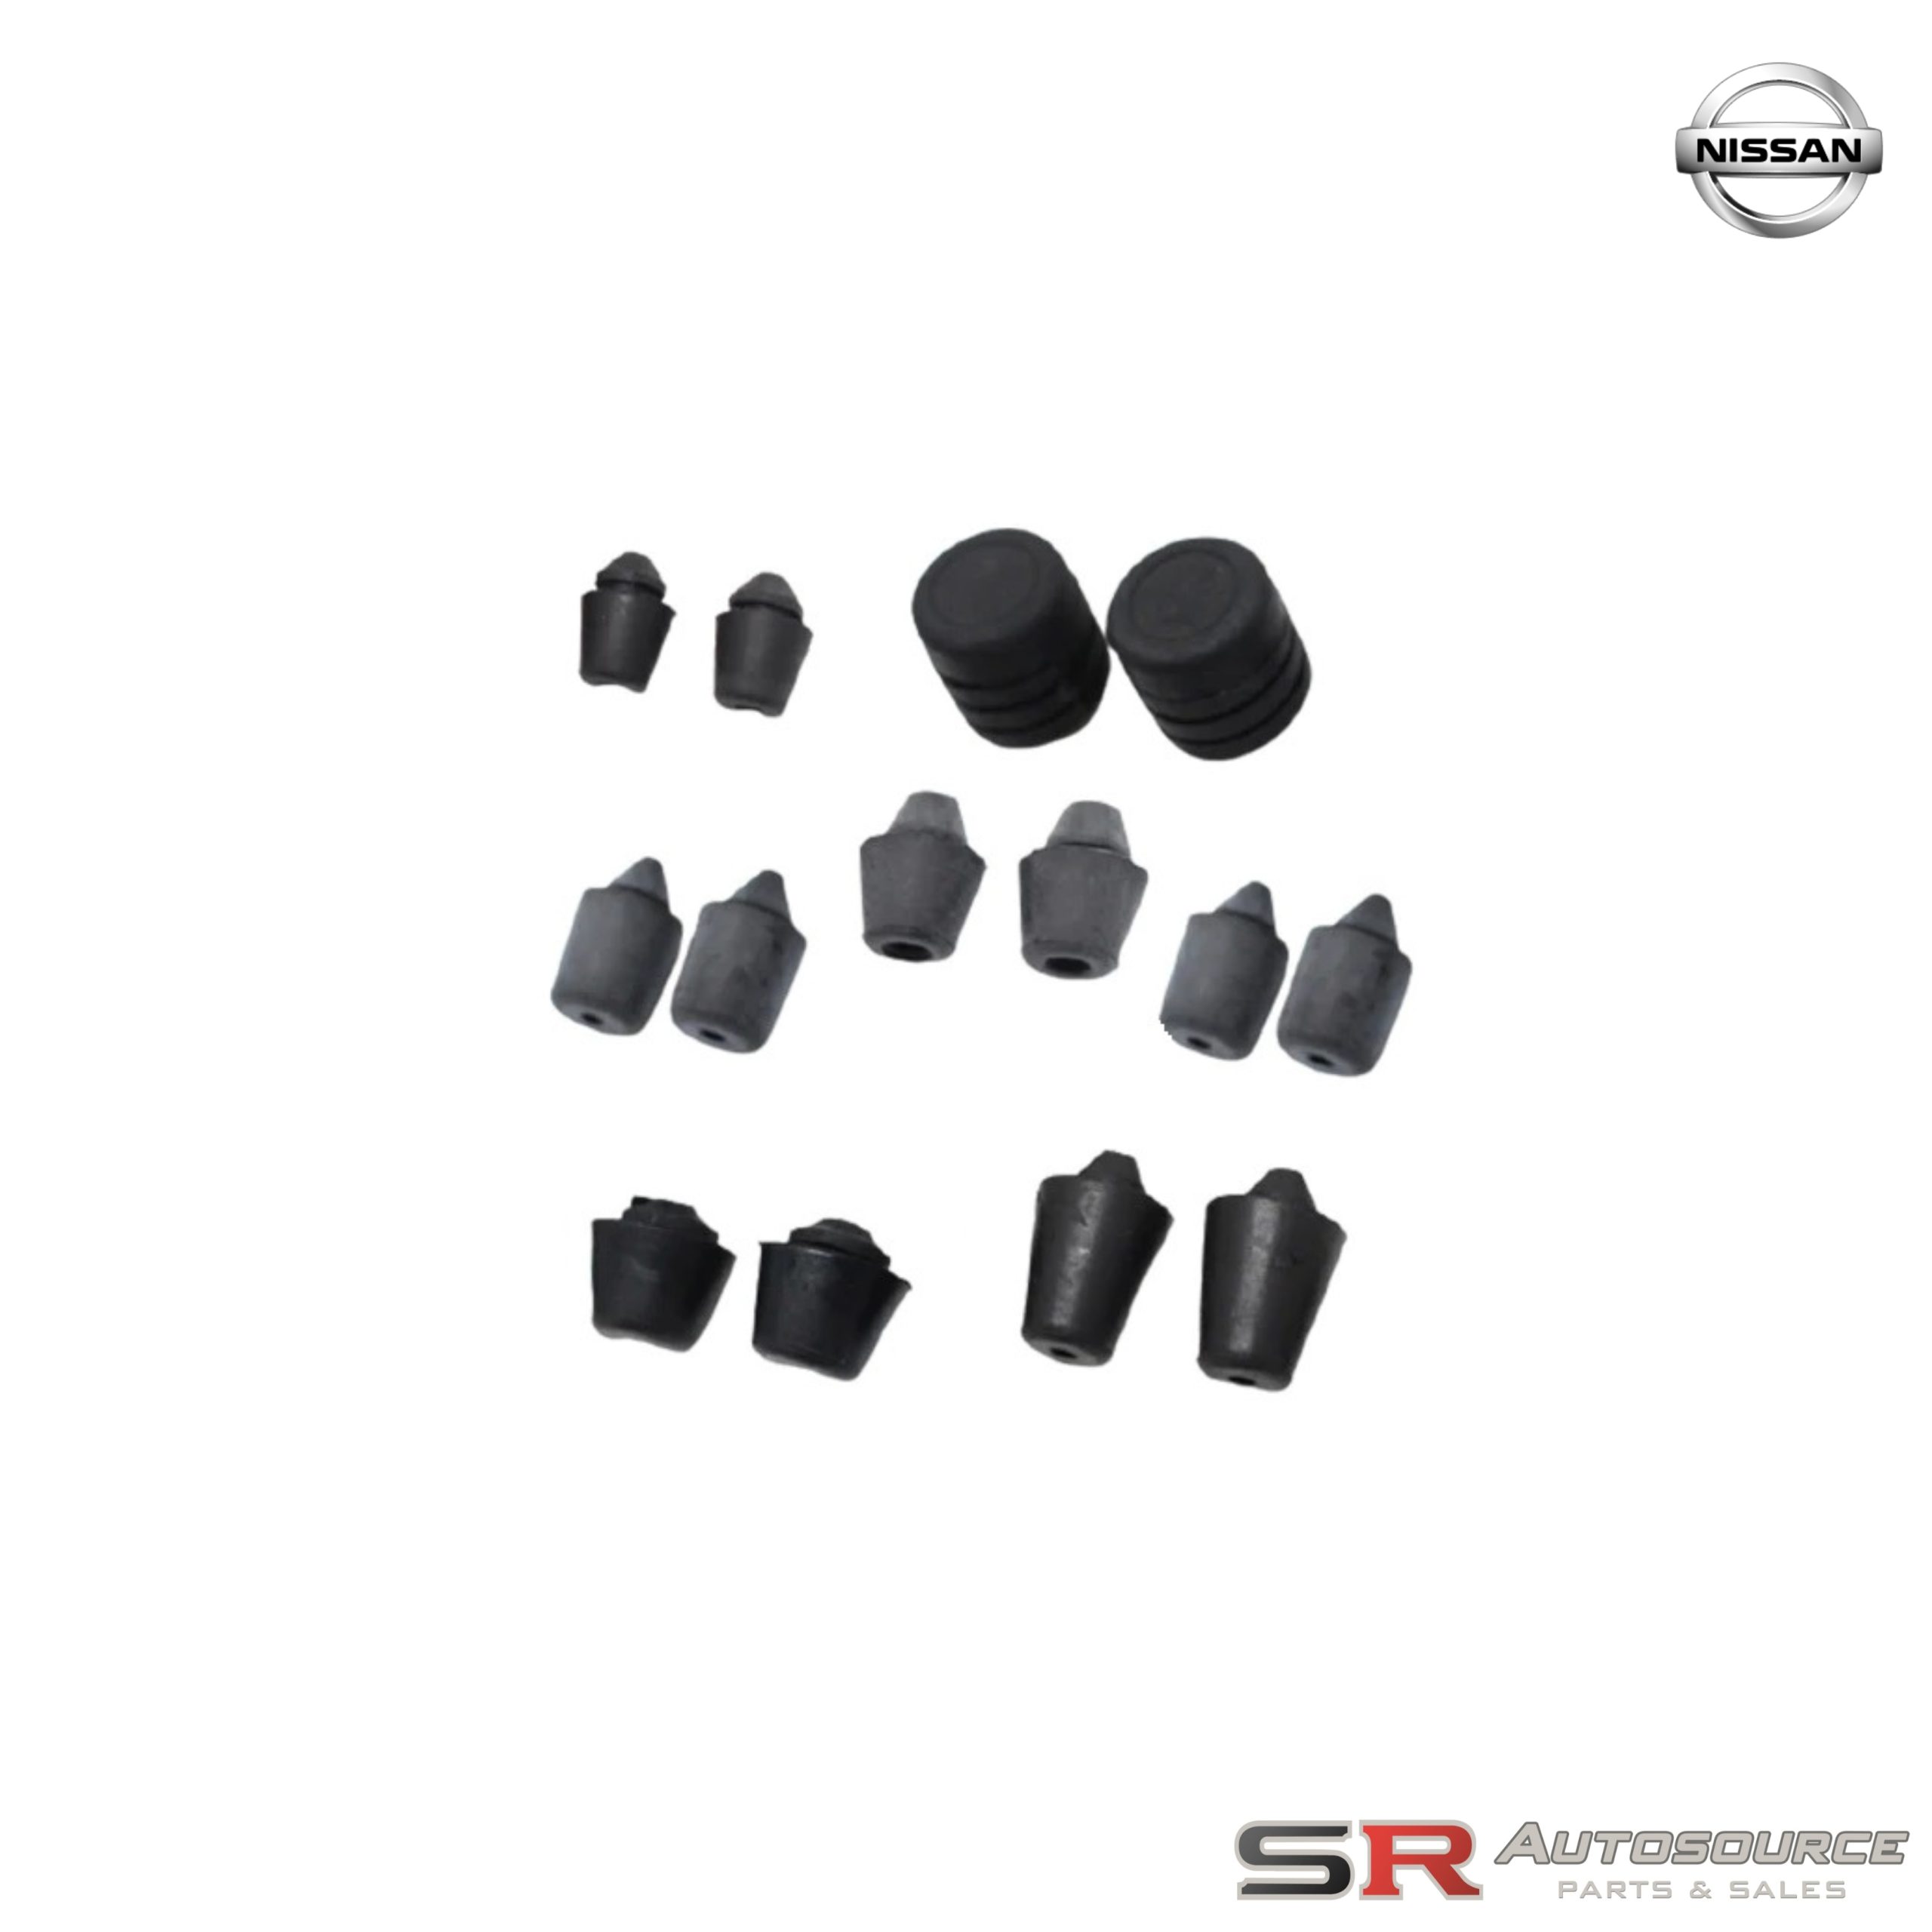 OEM Nissan Skyline Door Stop Cushion Rubbers Set – R32/R33/R34 Models